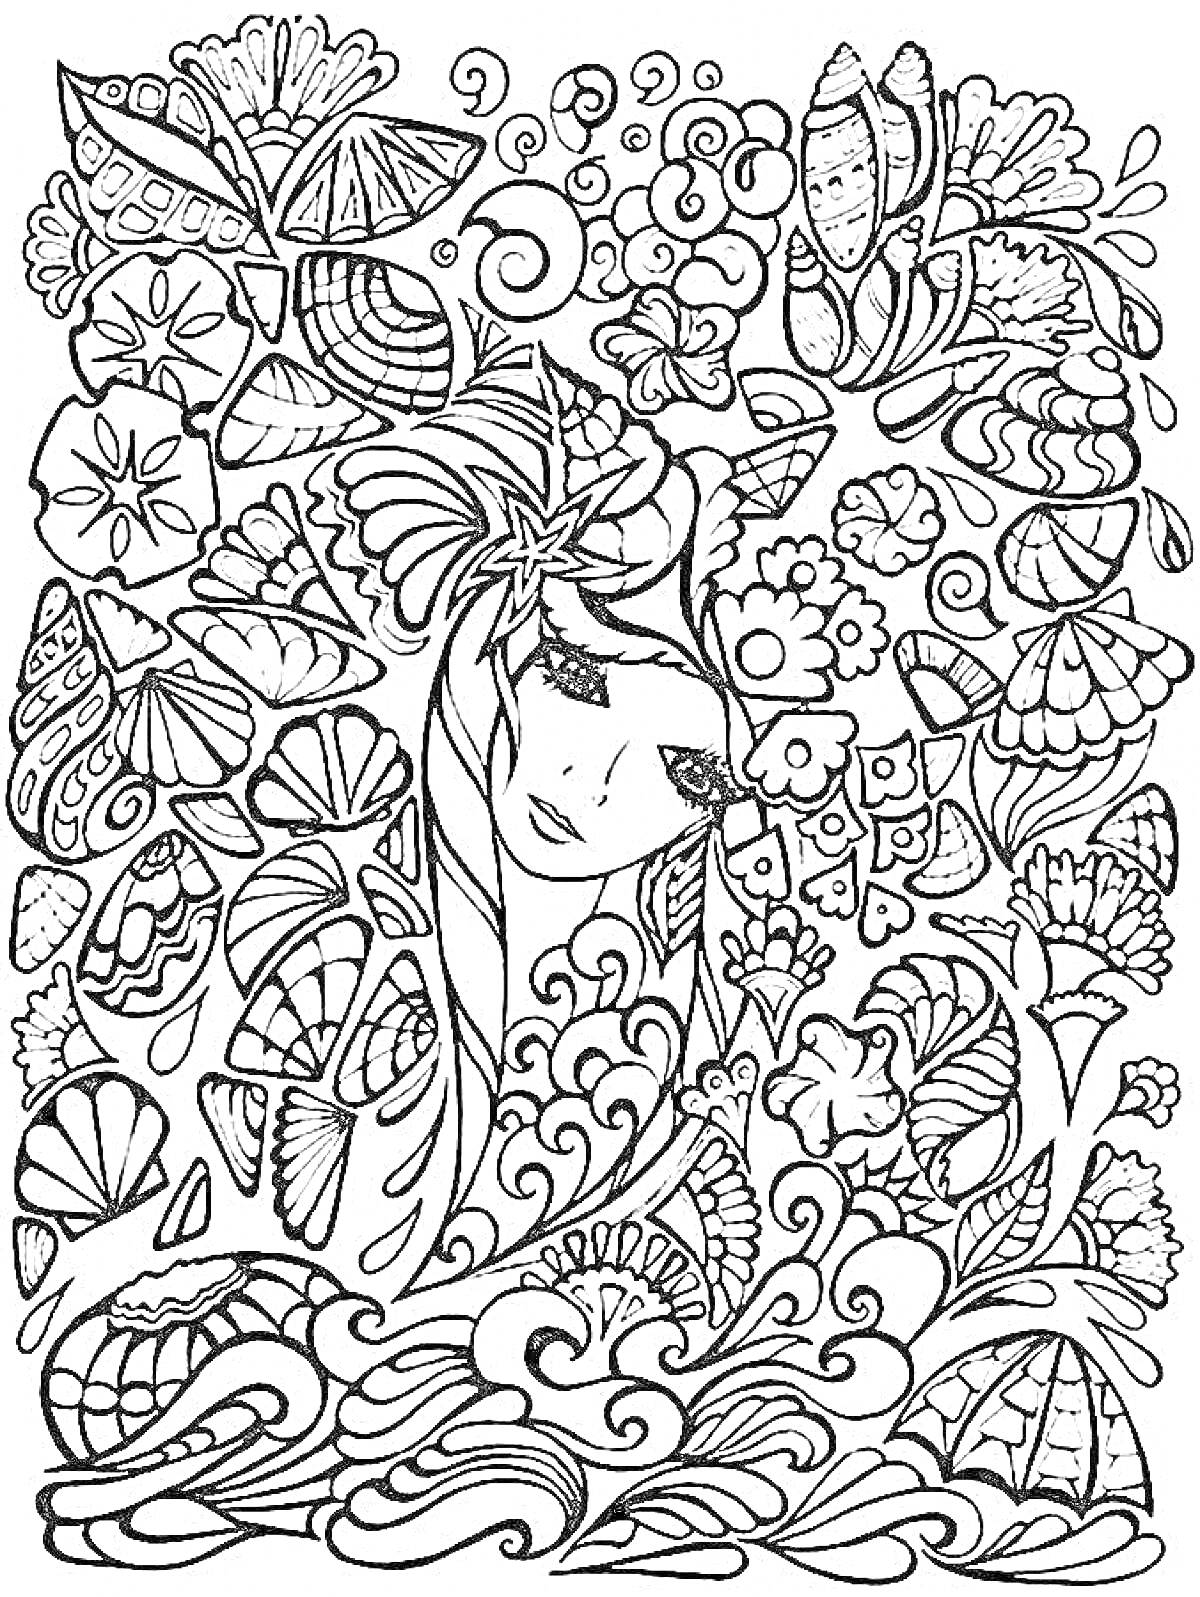 Раскраска Девушка среди цветов и ракушек с декоративными элементами